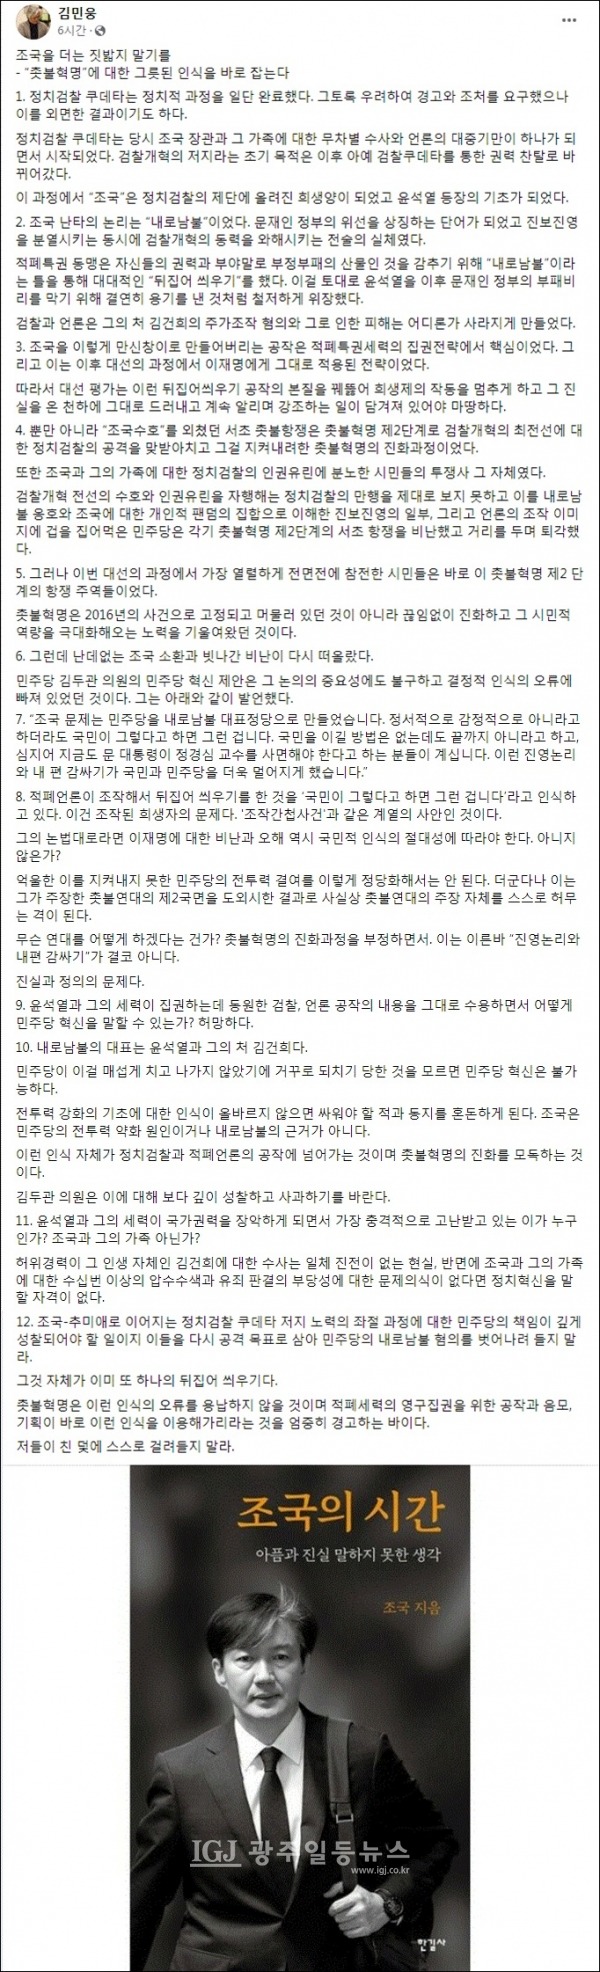 경희대학교 미래문명원 김민웅 교수 페이스북 갈무리.